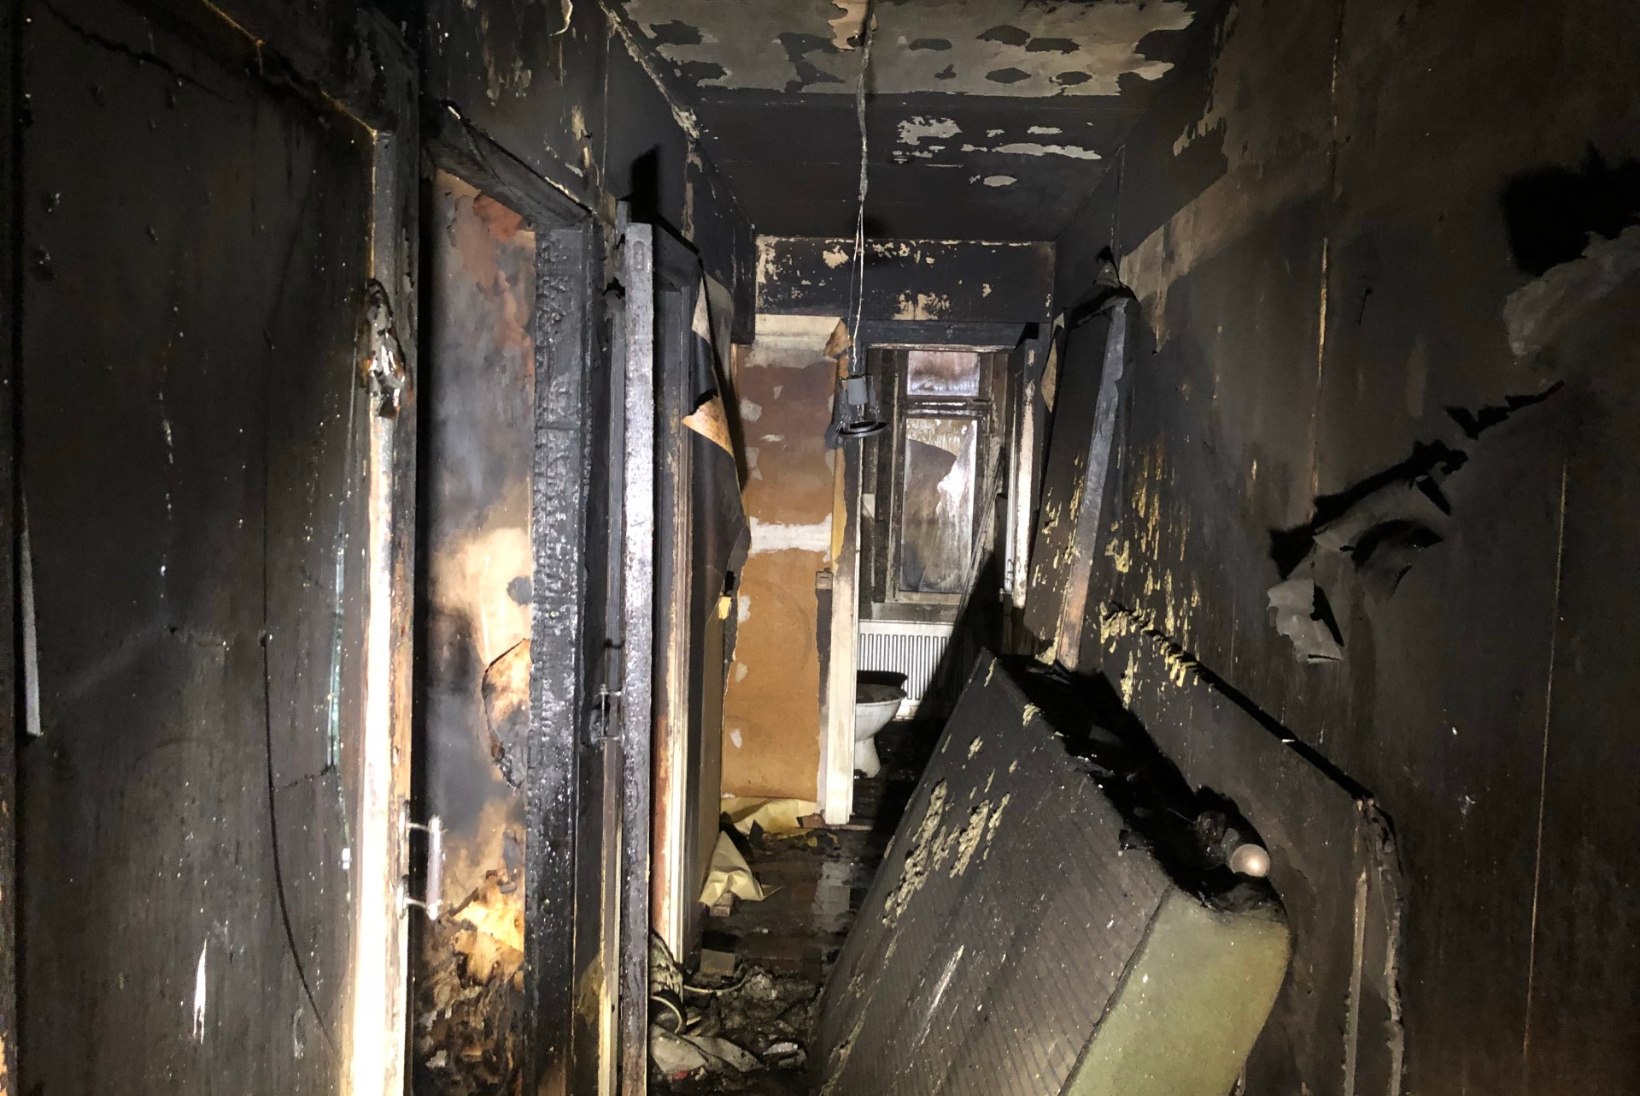 VIDEO ja FOTOD SÜNDMUSKOHALT | Viljandis hukkus elumaja põlengus inimene, kolm viidi haiglasse